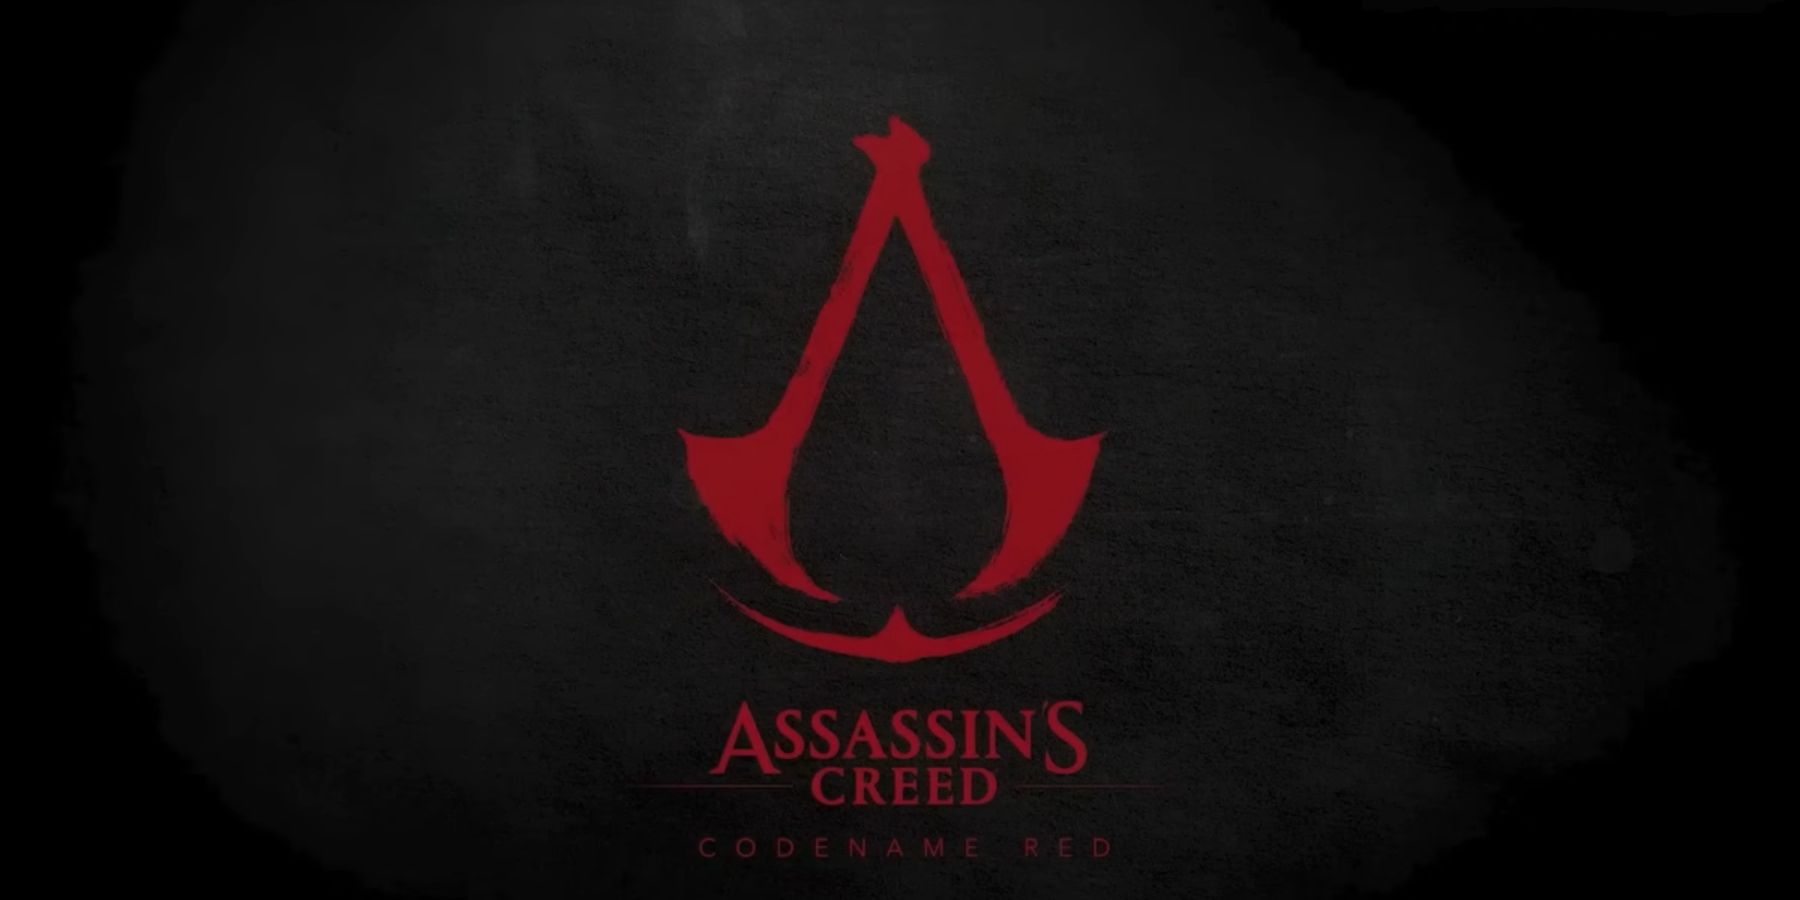 Employé d’Ubisoft affirme que les développeurs ont quitté l’entreprise en raison du directeur rouge de Creed d’Assassin